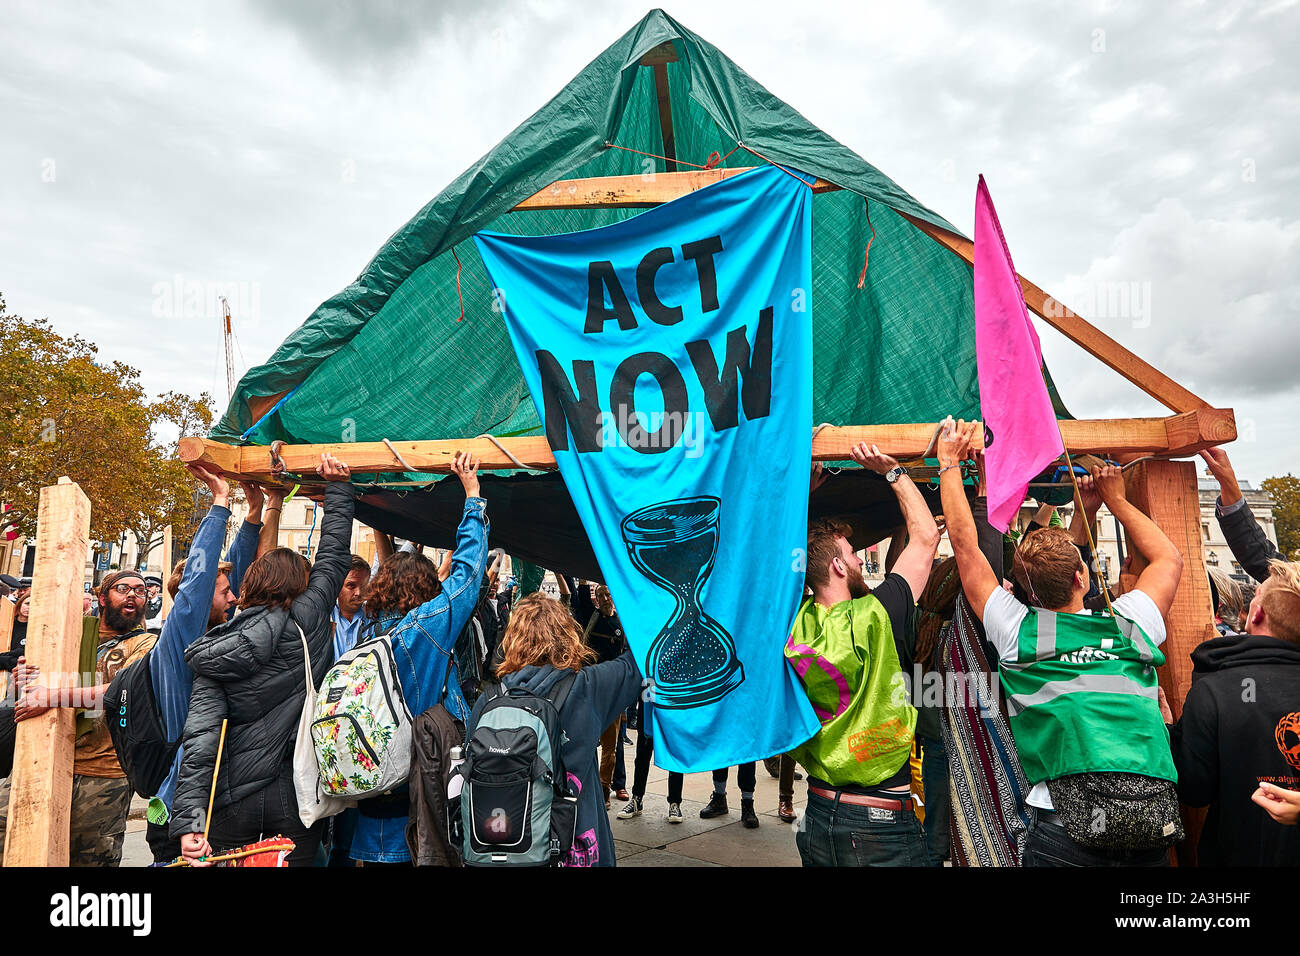 Londres, Reino Unido - Oct 8, 2019: activistas ambientales erigir una marquesina de madera en el segundo día de una ocupación de Trafalgar Square por activistas de extinción rebelión. Foto de stock